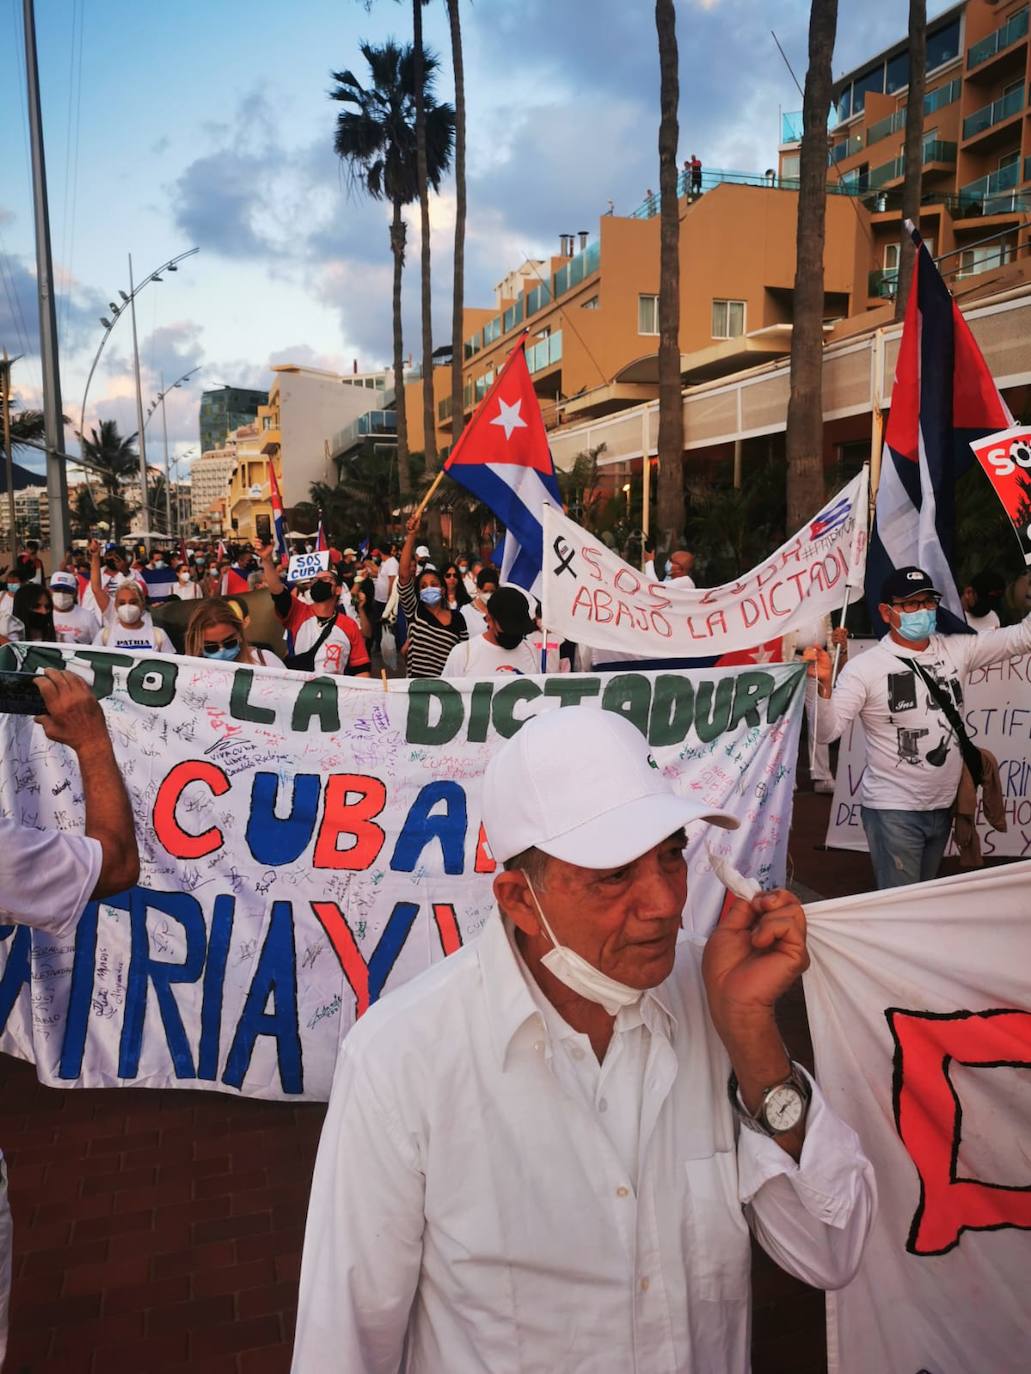 Imagen de la manifestación que ha tenido lugar hoy en Las Canteras y protagonizada por cubanos afincados en Gran Canaria.